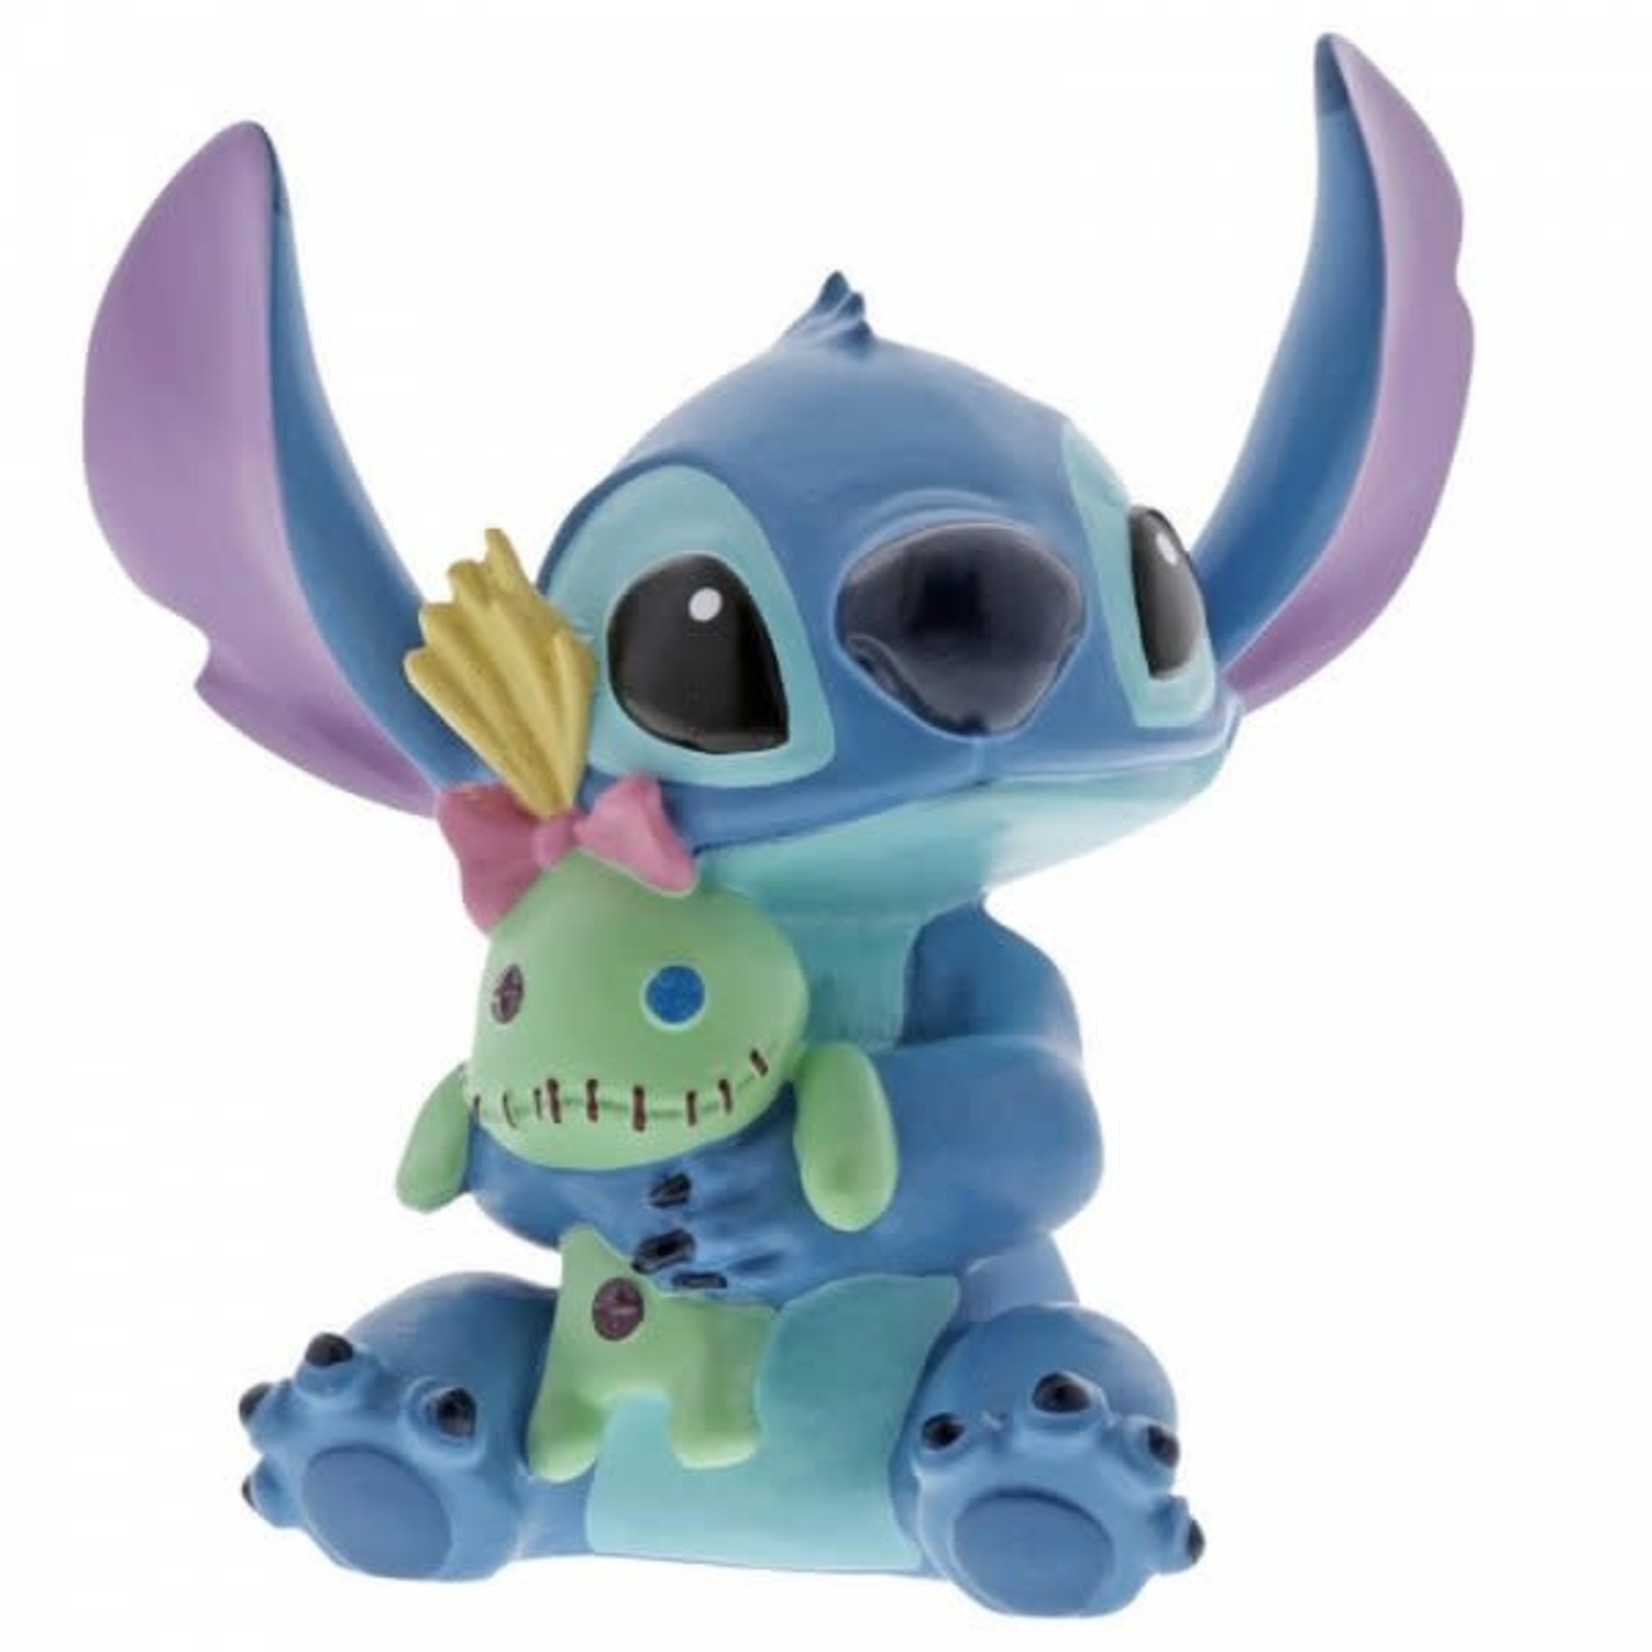 Disney Disney - Stitch with Doll - 6002189